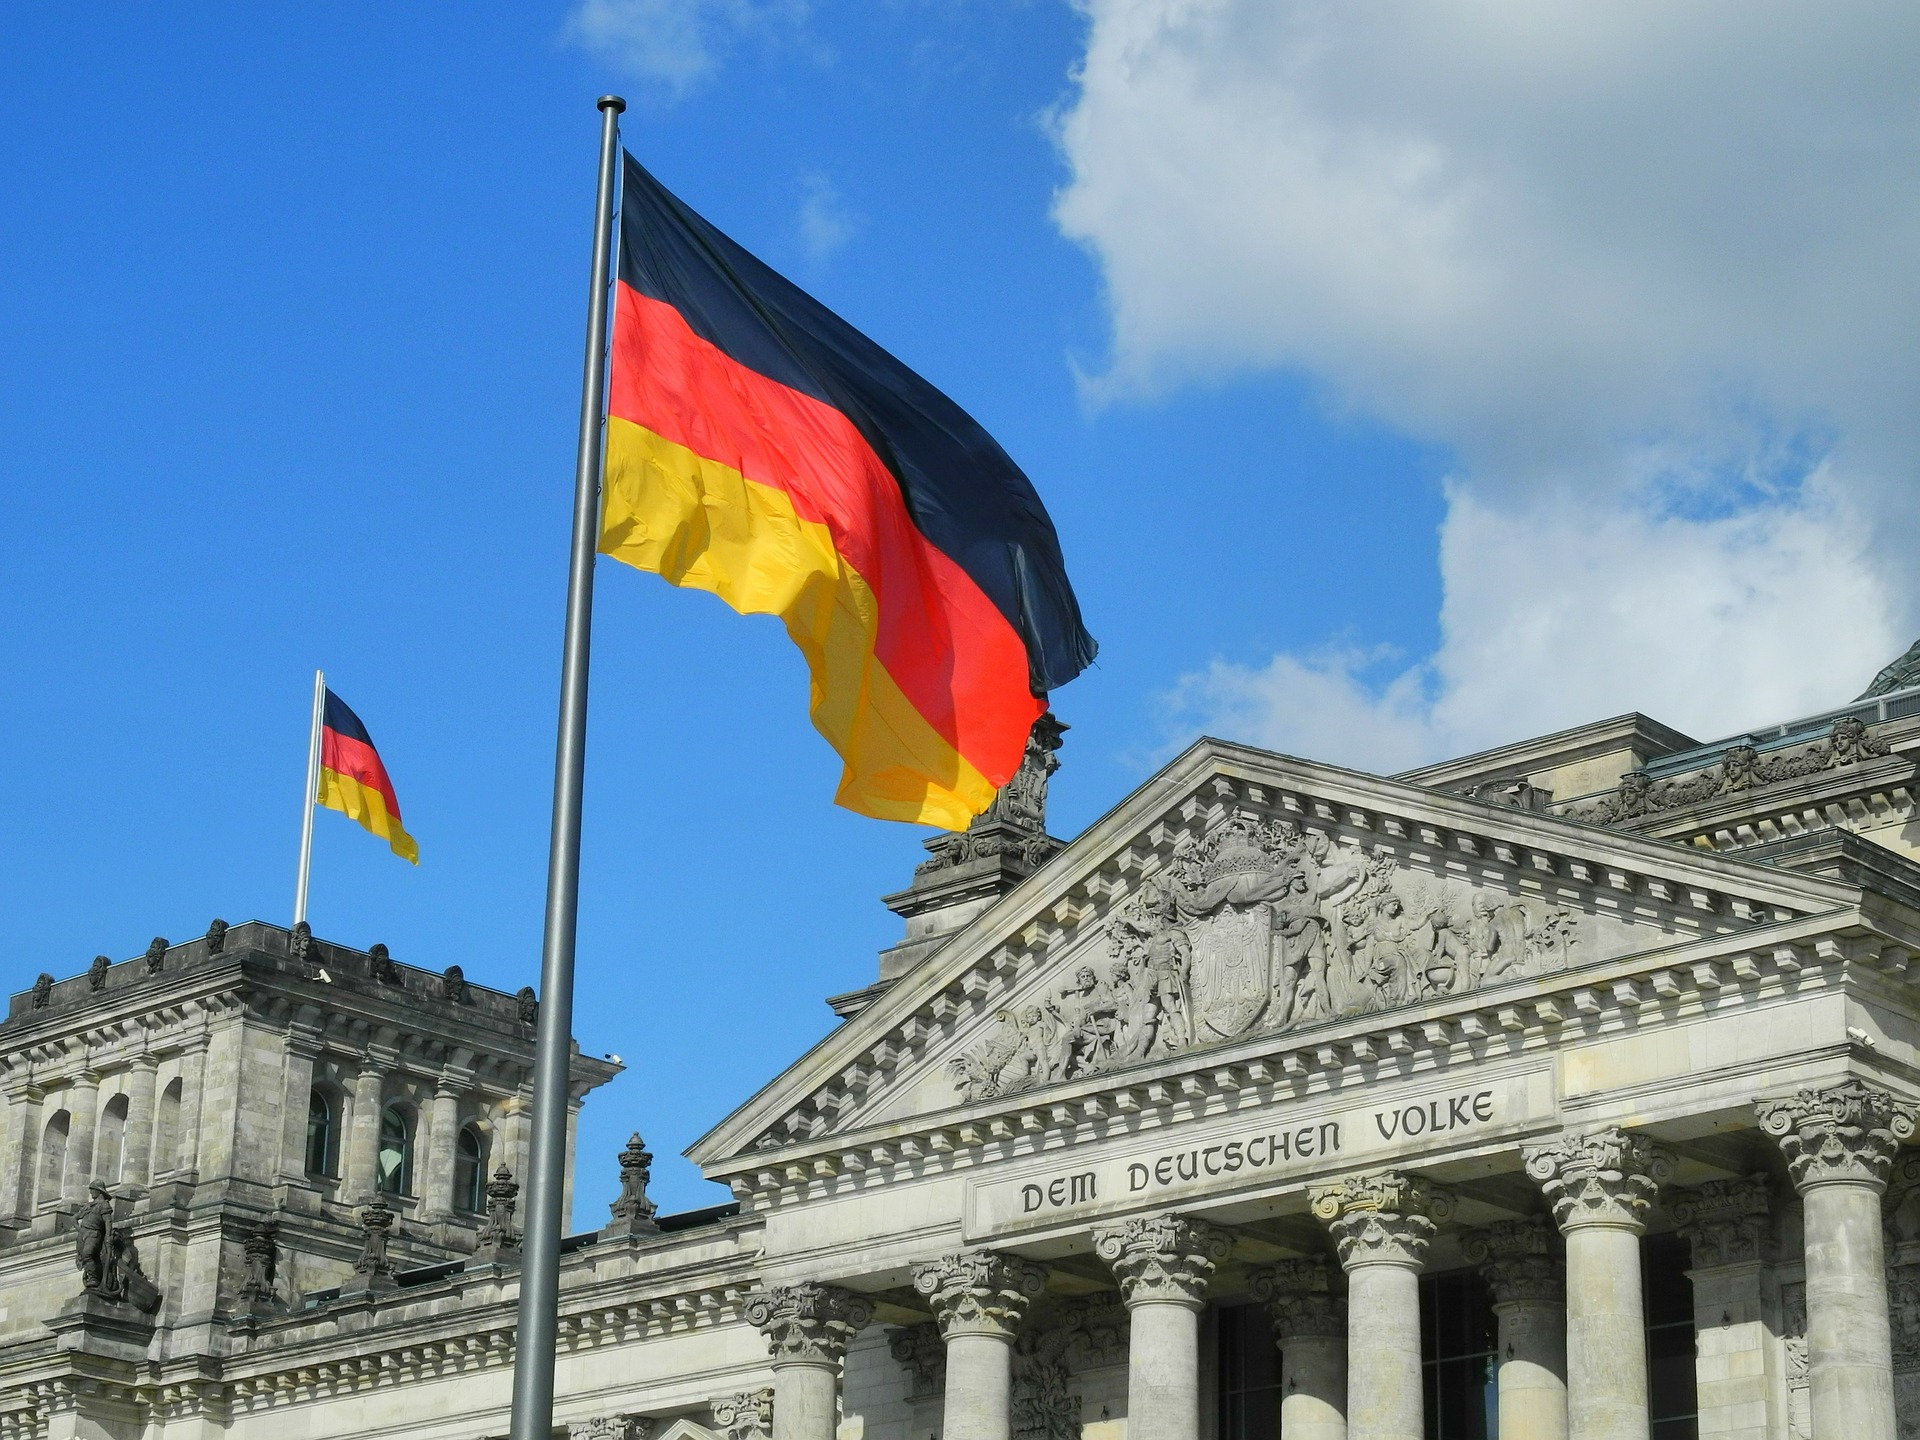 Reichstag - Karlheinz Pape auf Pixabay